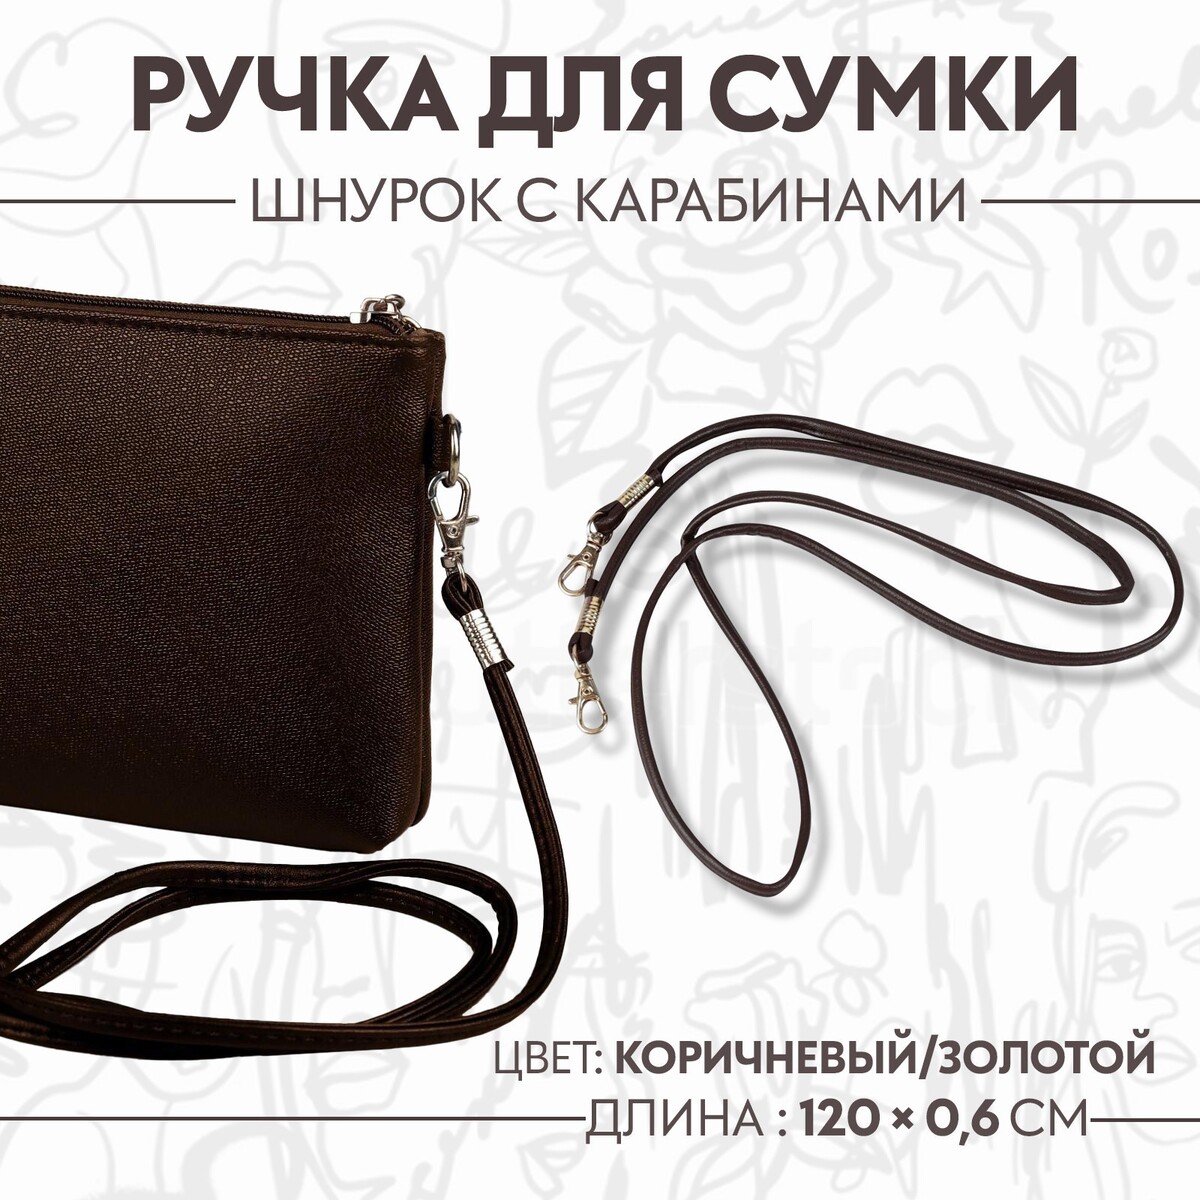 Ручка-шнурок для сумки, с карабинами, 120 × 0,6 см, цвет коричневый ручка шнурок для сумки с карабинами 120 × 0 6 см